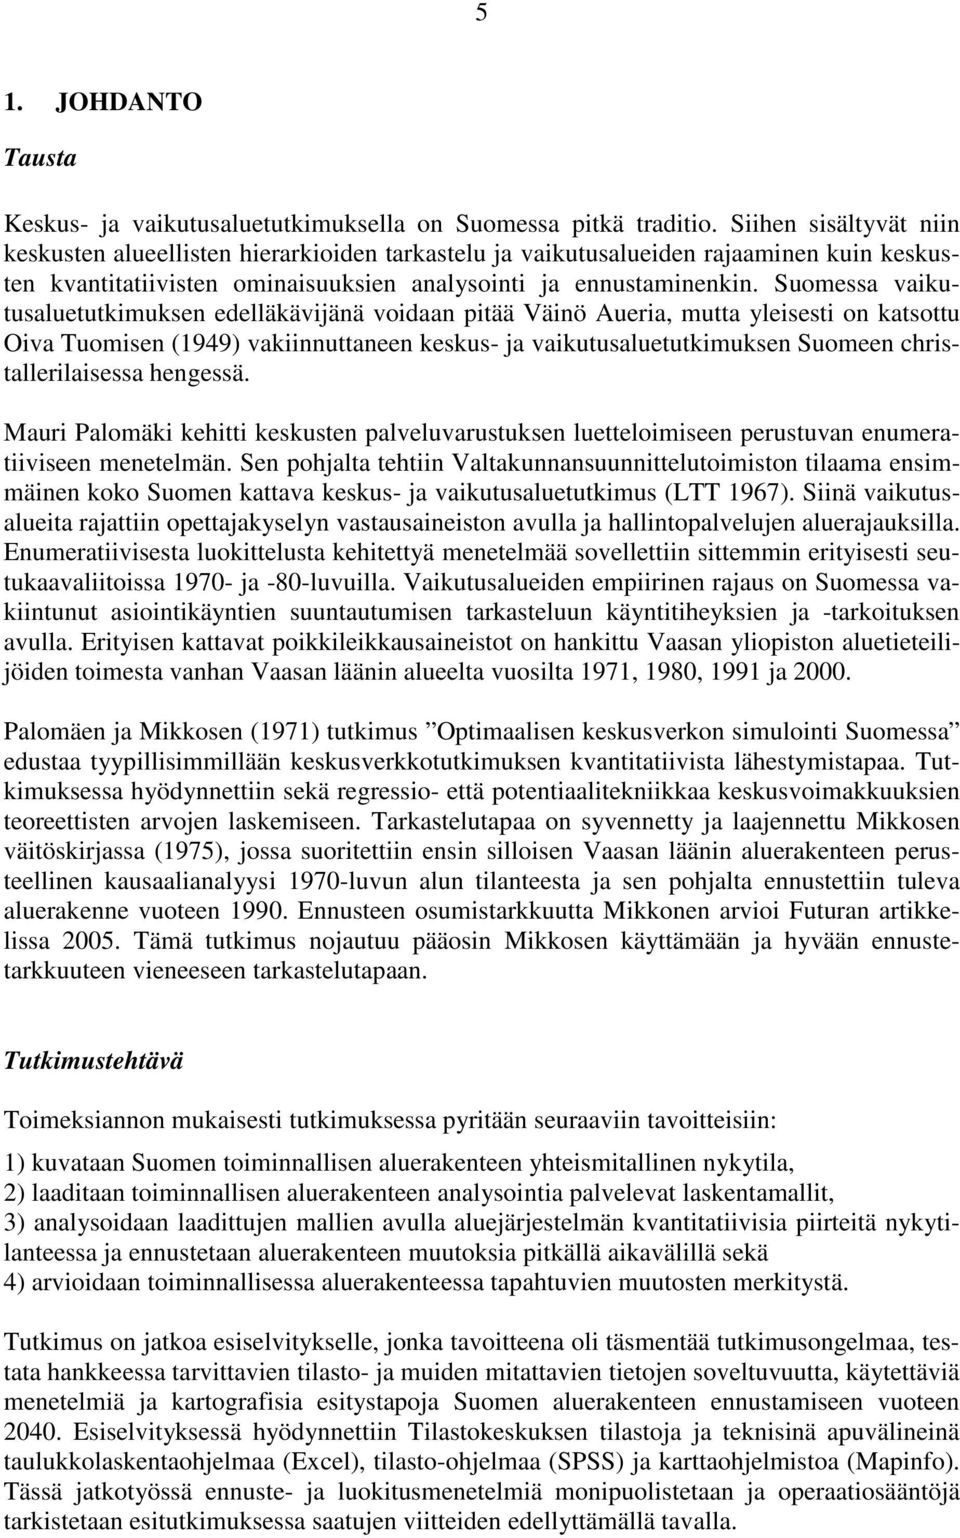 Suomessa vaikutusaluetutkimuksen edelläkävijänä voidaan pitää Väinö Aueria, mutta yleisesti on katsottu Oiva Tuomisen (1949) vakiinnuttaneen keskus- ja vaikutusaluetutkimuksen Suomeen